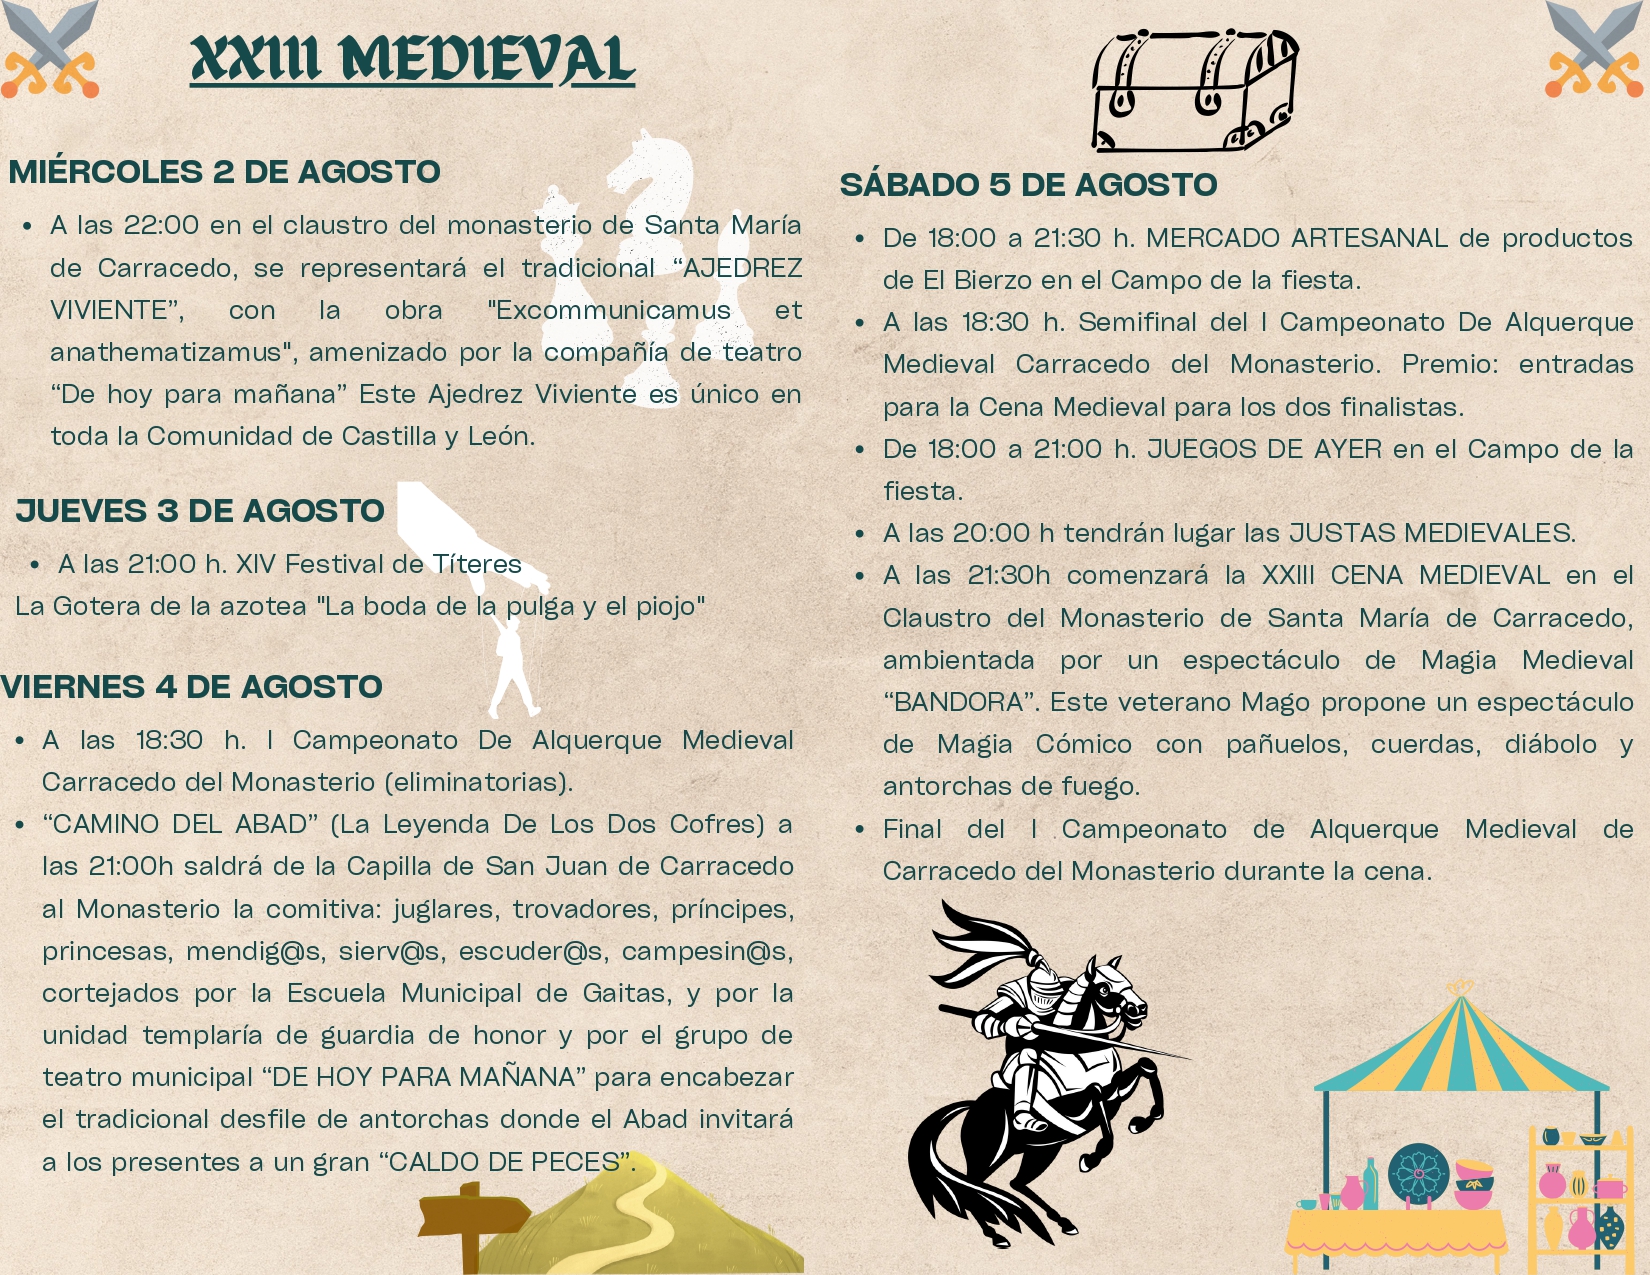 El XXIII Medieval de Carracedelo se celebrará del 2 al 5 de agosto 2